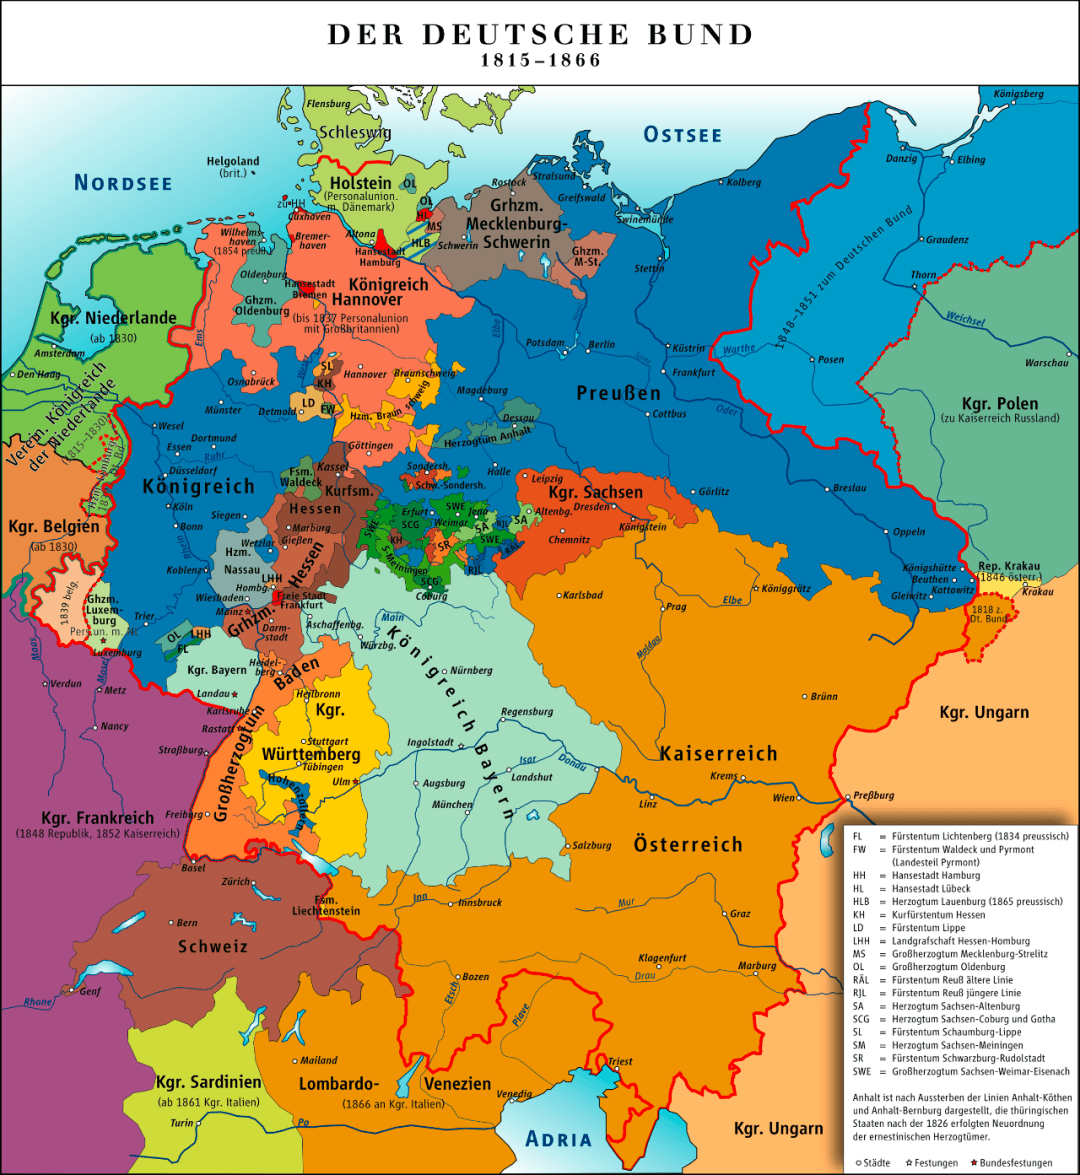 第一块是最强大的奥地利帝国,同时它也是邦联的永久主席国,这个奥地利